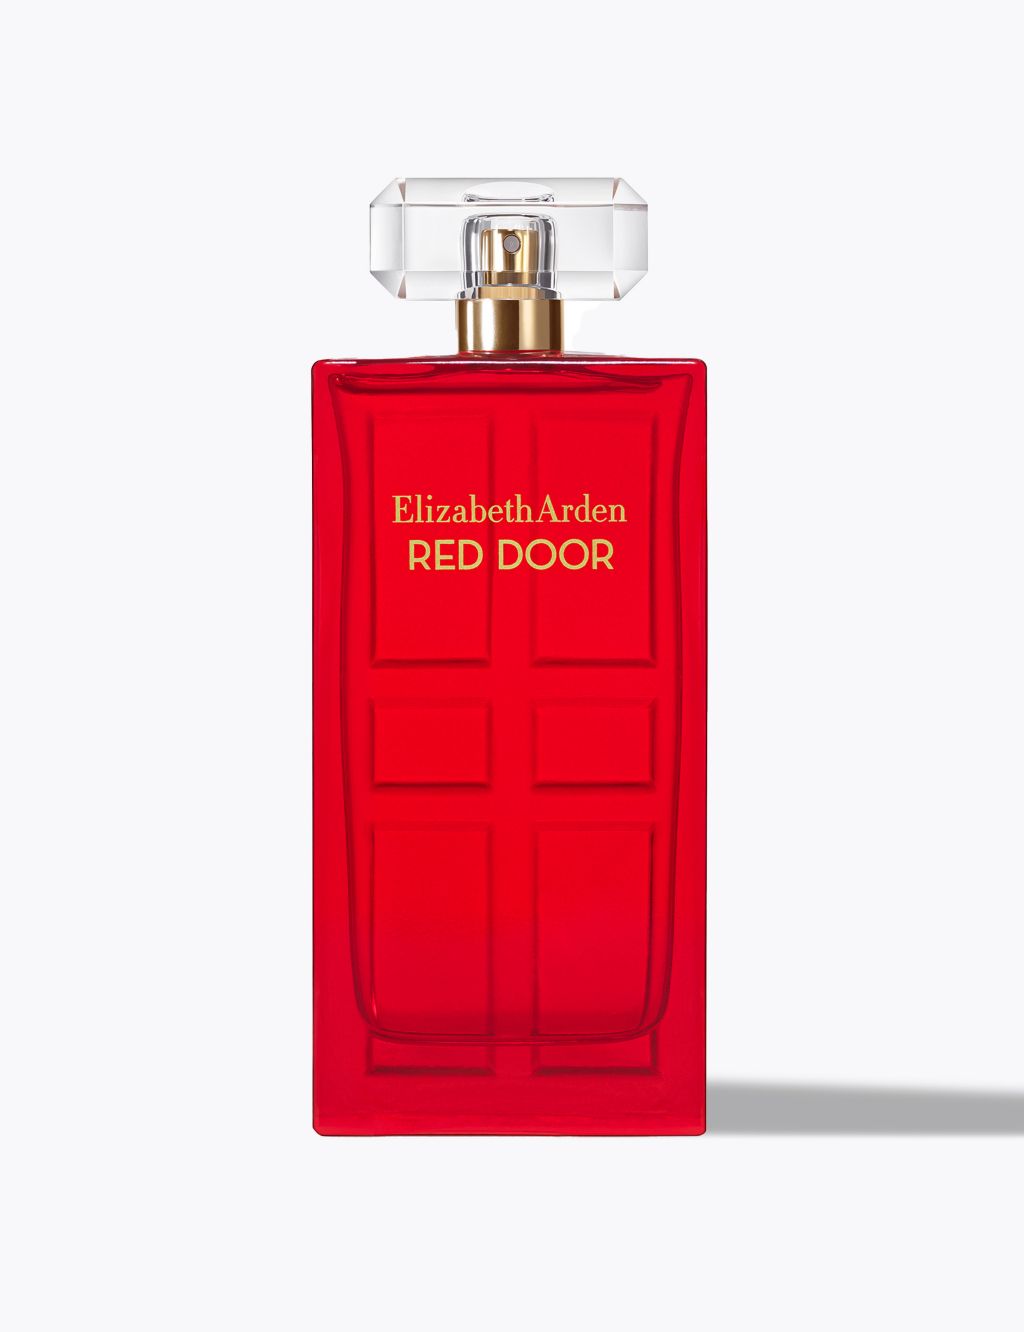 Elizabeth Arden Red Door Eau de Toilette Spray Naturel, Perfume for Women 100ml